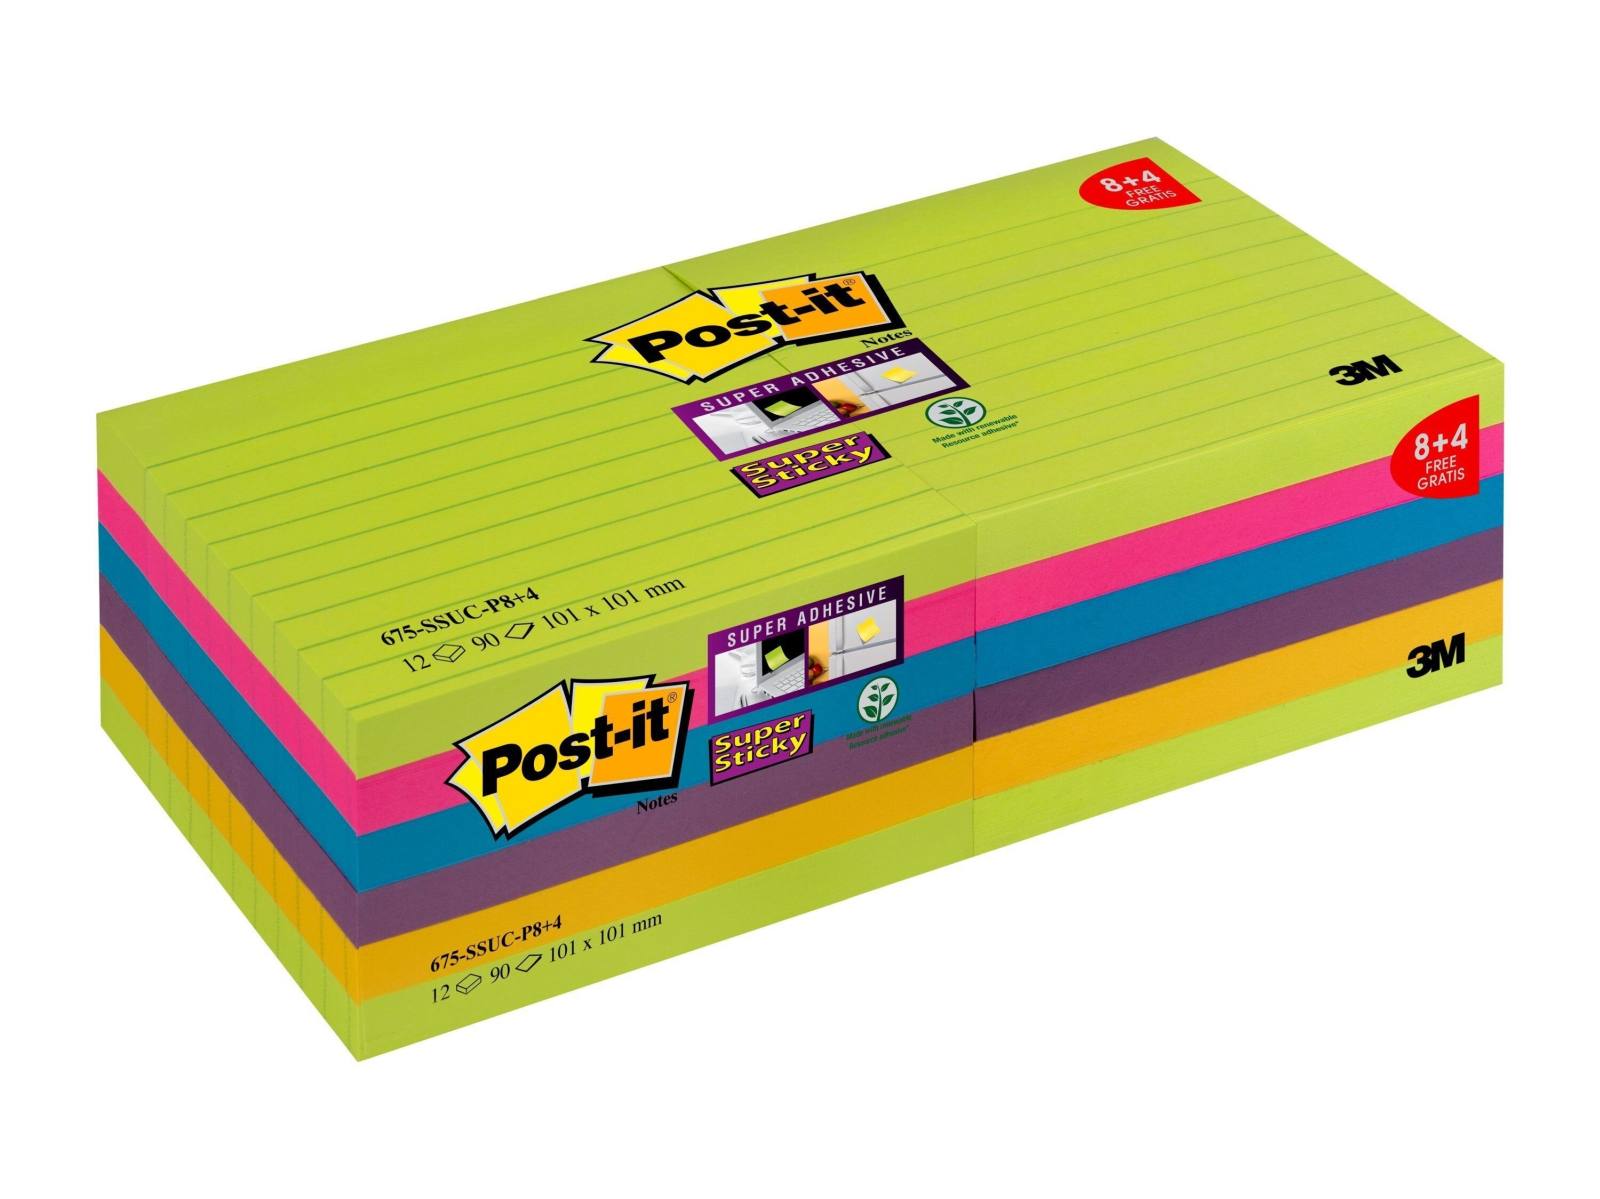 3M Post-it Super Sticky Notes Promotion 675-SSUC-P8+4 12 kpl 90 arkin lehtiöitä erikoishintaan, neonvihreä, ultra pinkki, ultra sininen, luumu violetti, ultra keltainen, 101 mm x 101 mm, vuorattu, PEFC sertifioitu